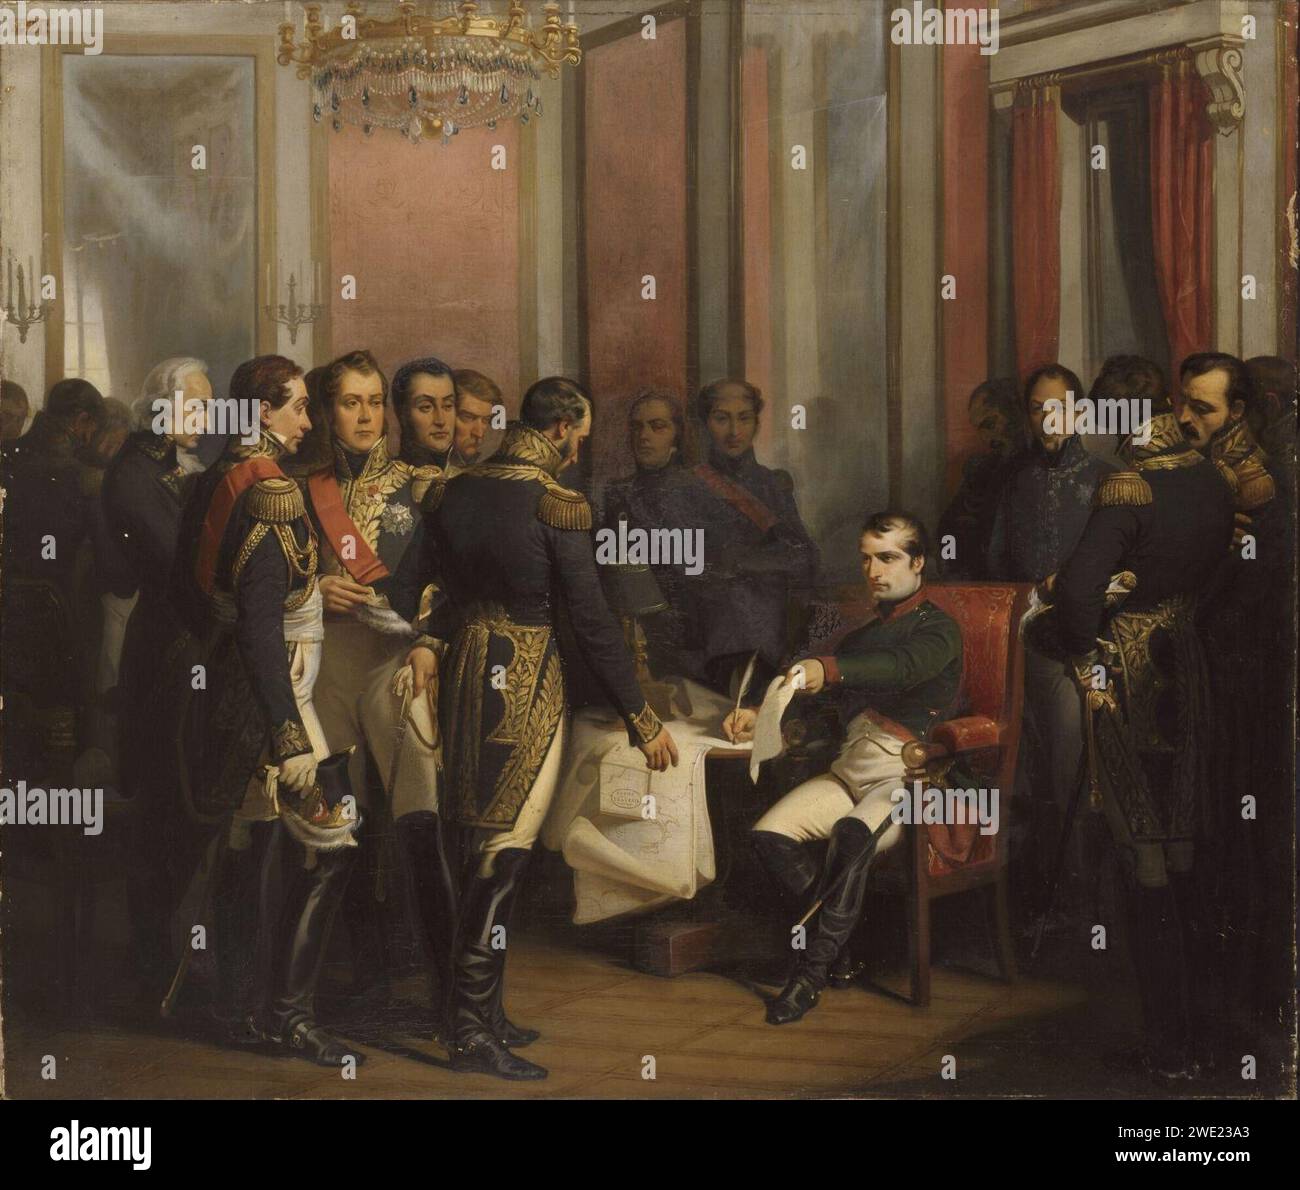 Bouchot - Napoléon signe son abdication à Fontainebleau 11 avril 1814. Stock Photo